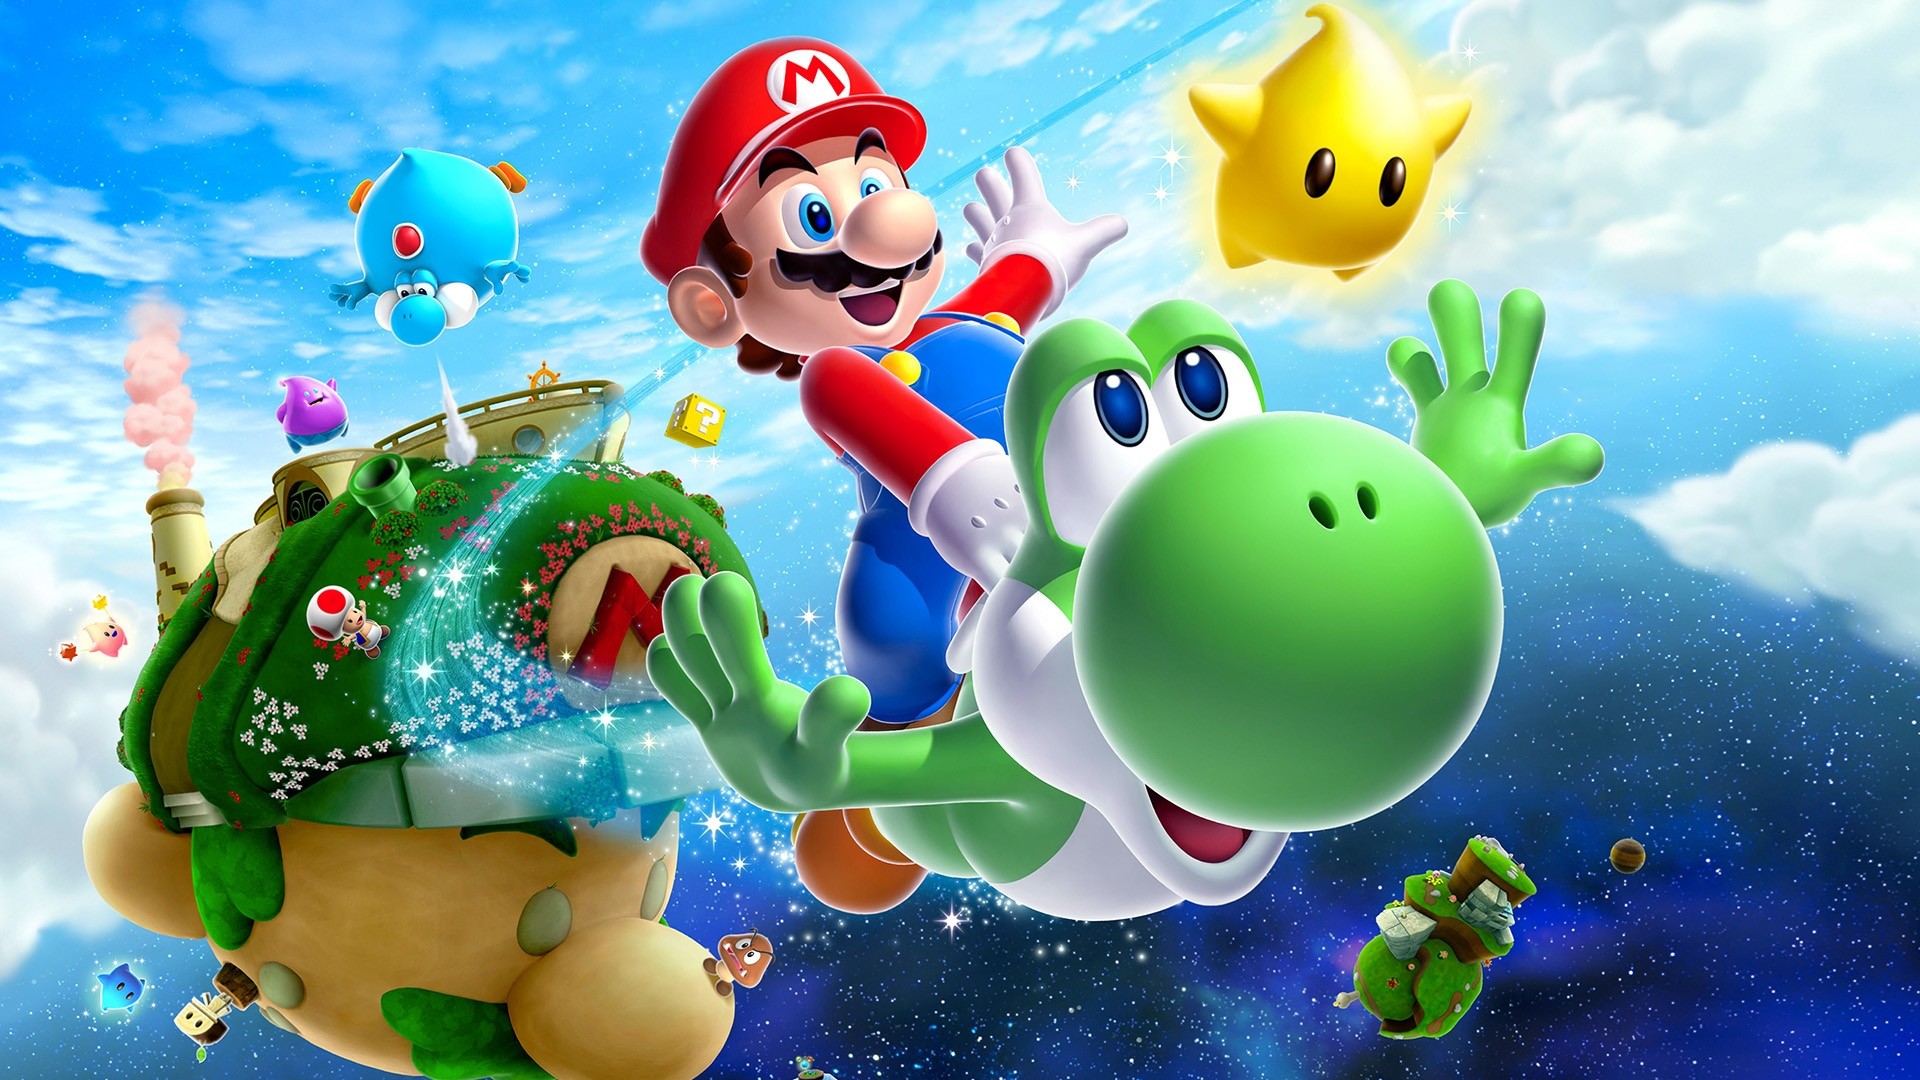 Nếu bạn là một fan của Super Mario Galaxy 2, bạn nhất định không thể bỏ qua bộ sưu tập hình nền này! Với các hình ảnh độc đáo và đầy màu sắc, bạn sẽ được đưa vào một thế giới rộng lớn, nơi mà bạn có thể cùng Mario và đồng đội phiêu lưu và chiến đấu.